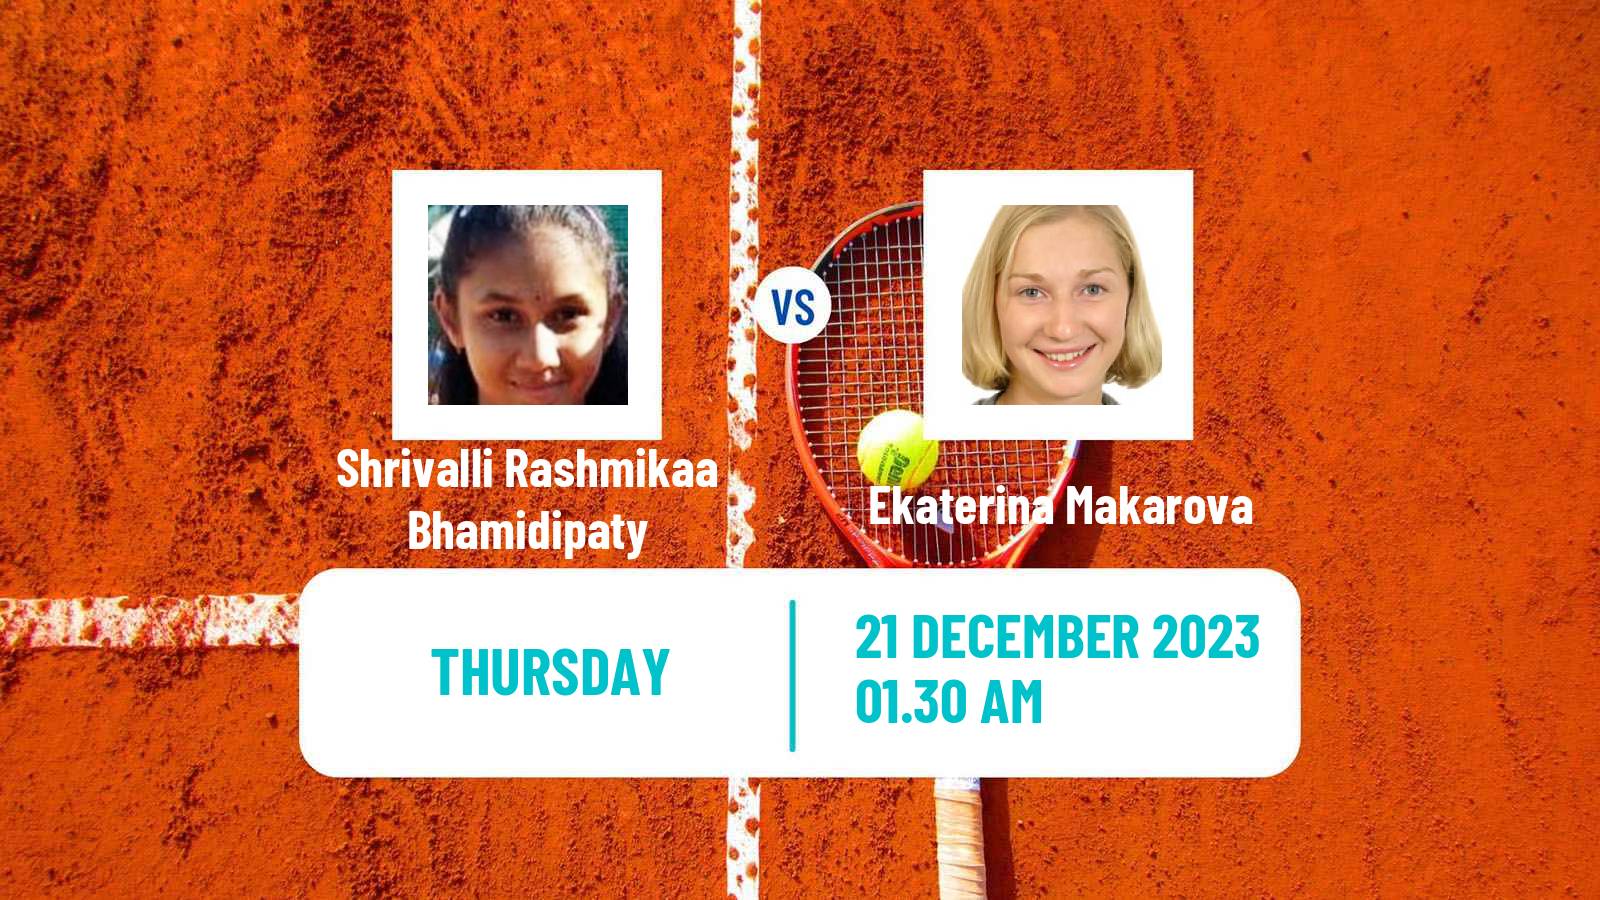 Tennis ITF W25 Solapur Women Shrivalli Rashmikaa Bhamidipaty - Ekaterina Makarova